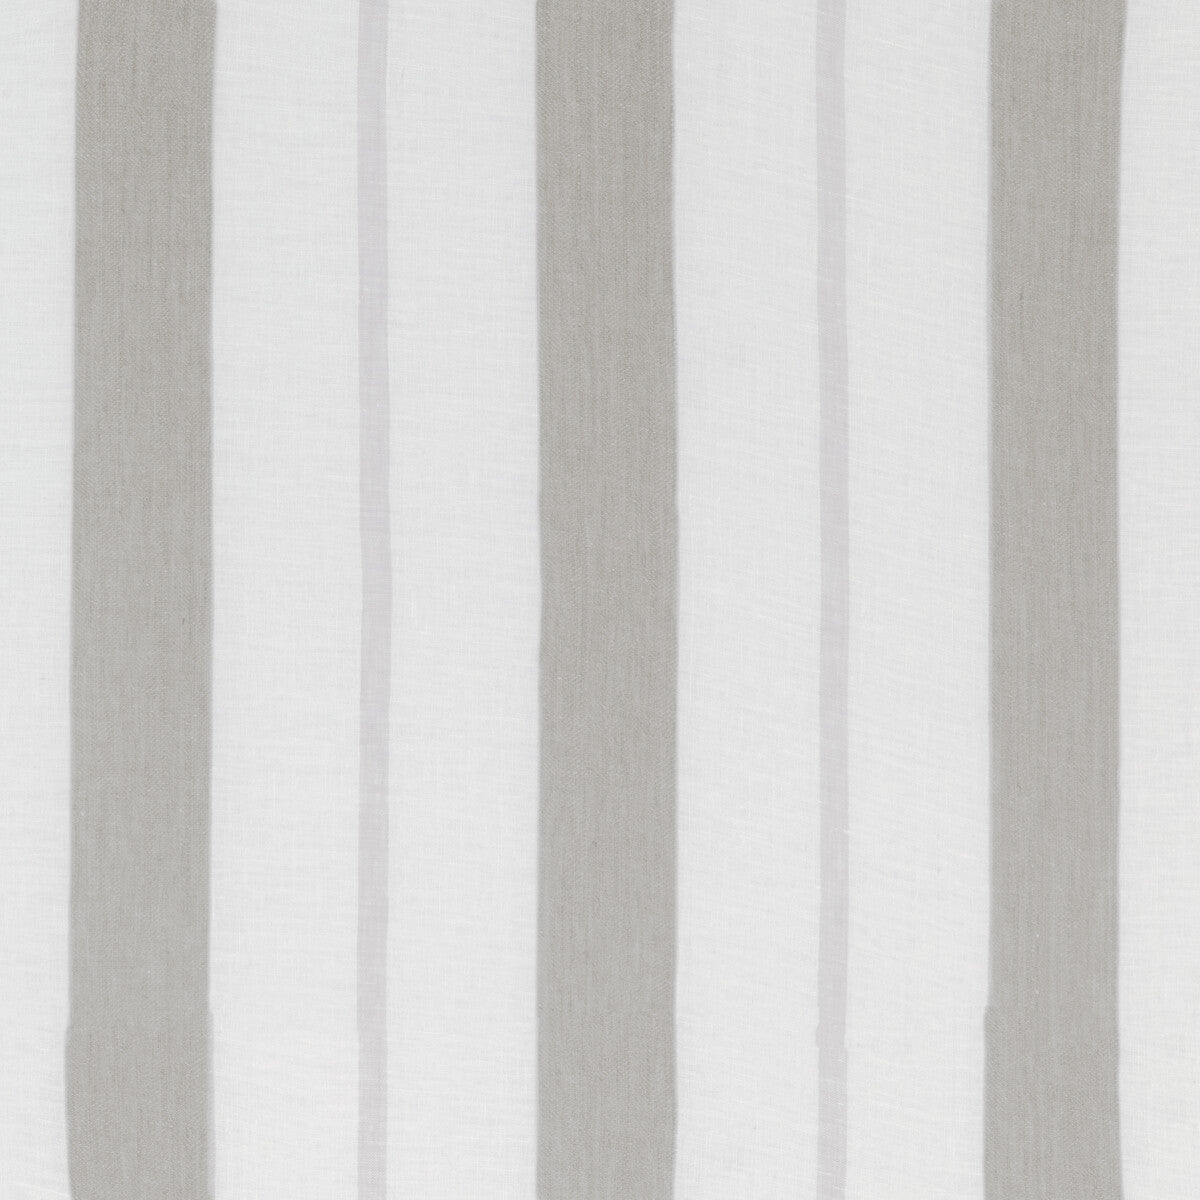 Kravet Design fabric in 4845-11 color - pattern 4845.11.0 - by Kravet Design